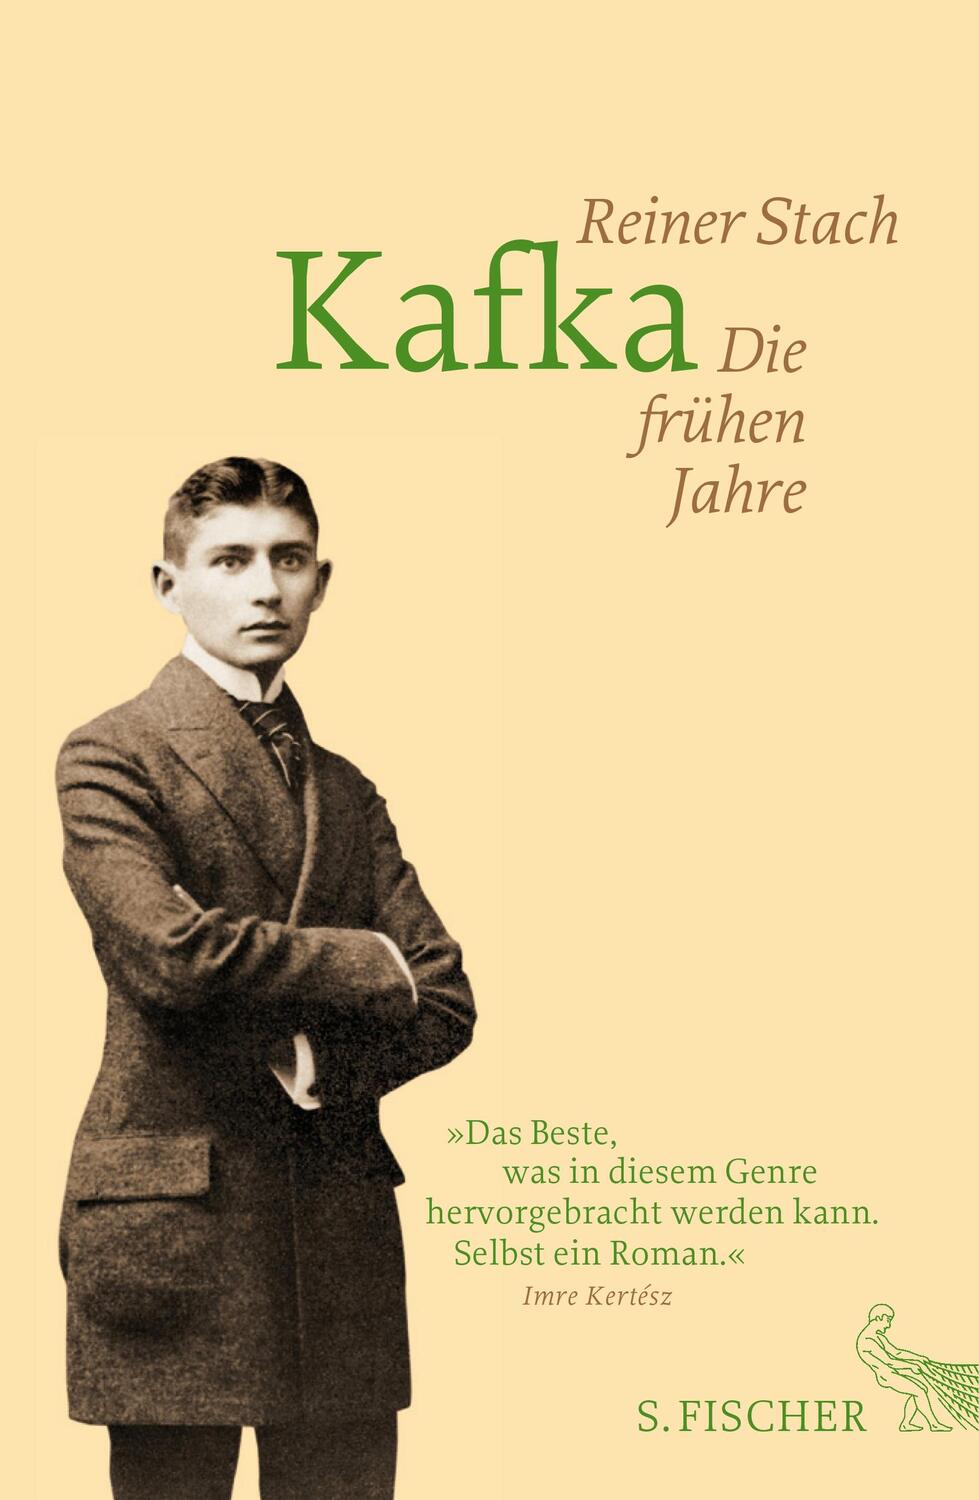 Kafka - Stach, Reiner